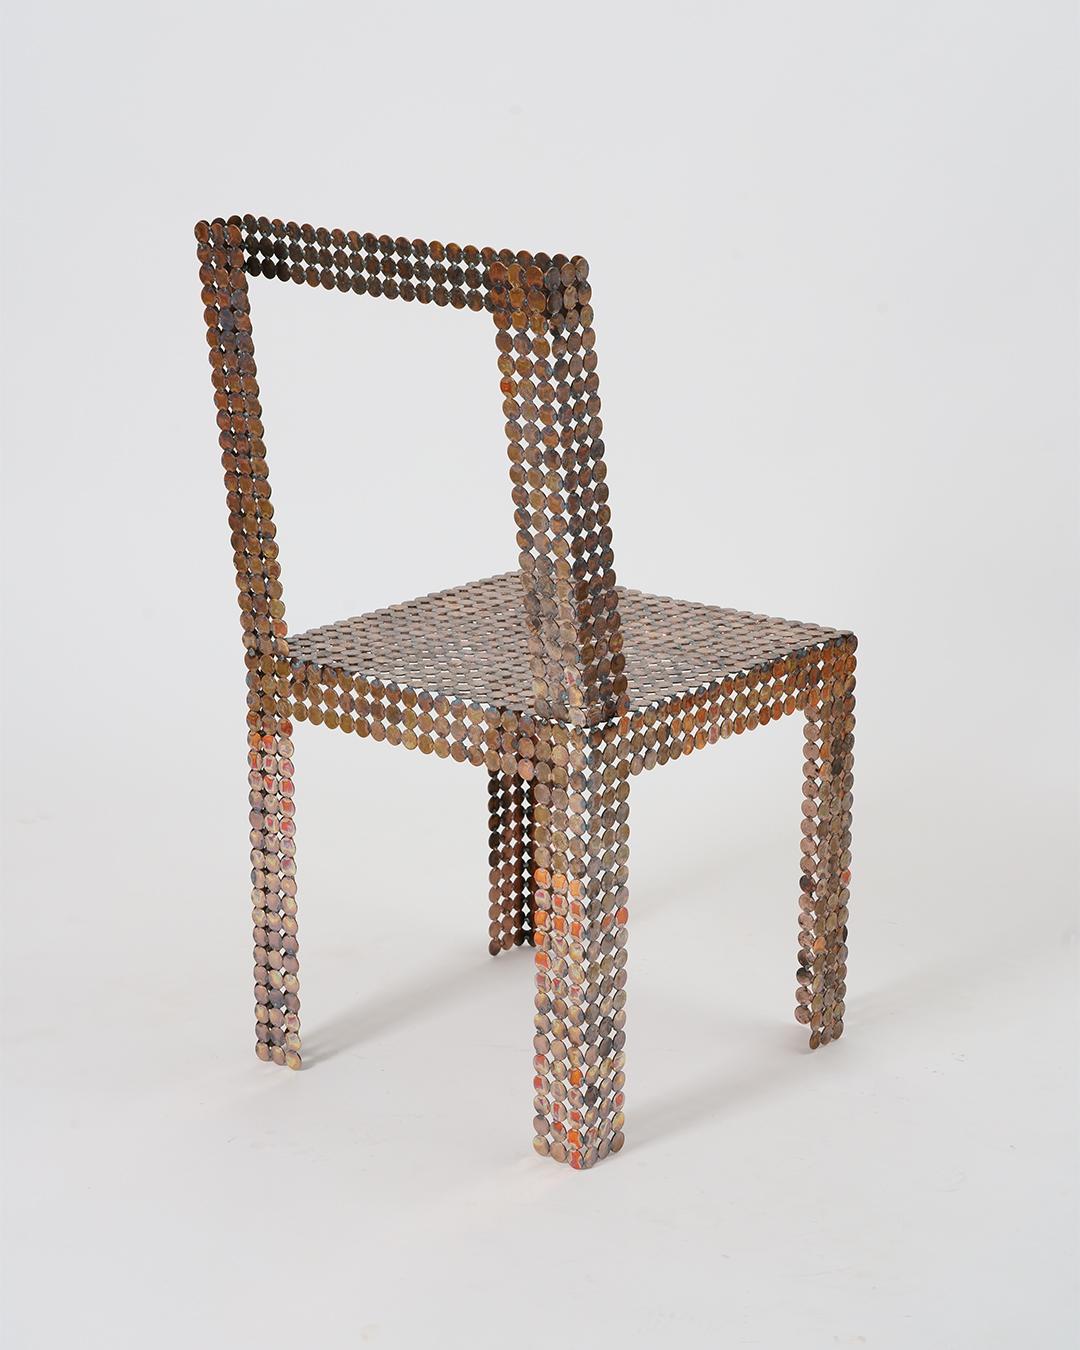 La chaise Calderilla remplit la fonction d'un objet (chaise), c'est en effet une des chaises que Cristian utilise pour manger. Mais sa véritable nature n'est pas tant fonctionnelle que discursive. Le processus de fabrication propose un jeu de mots.